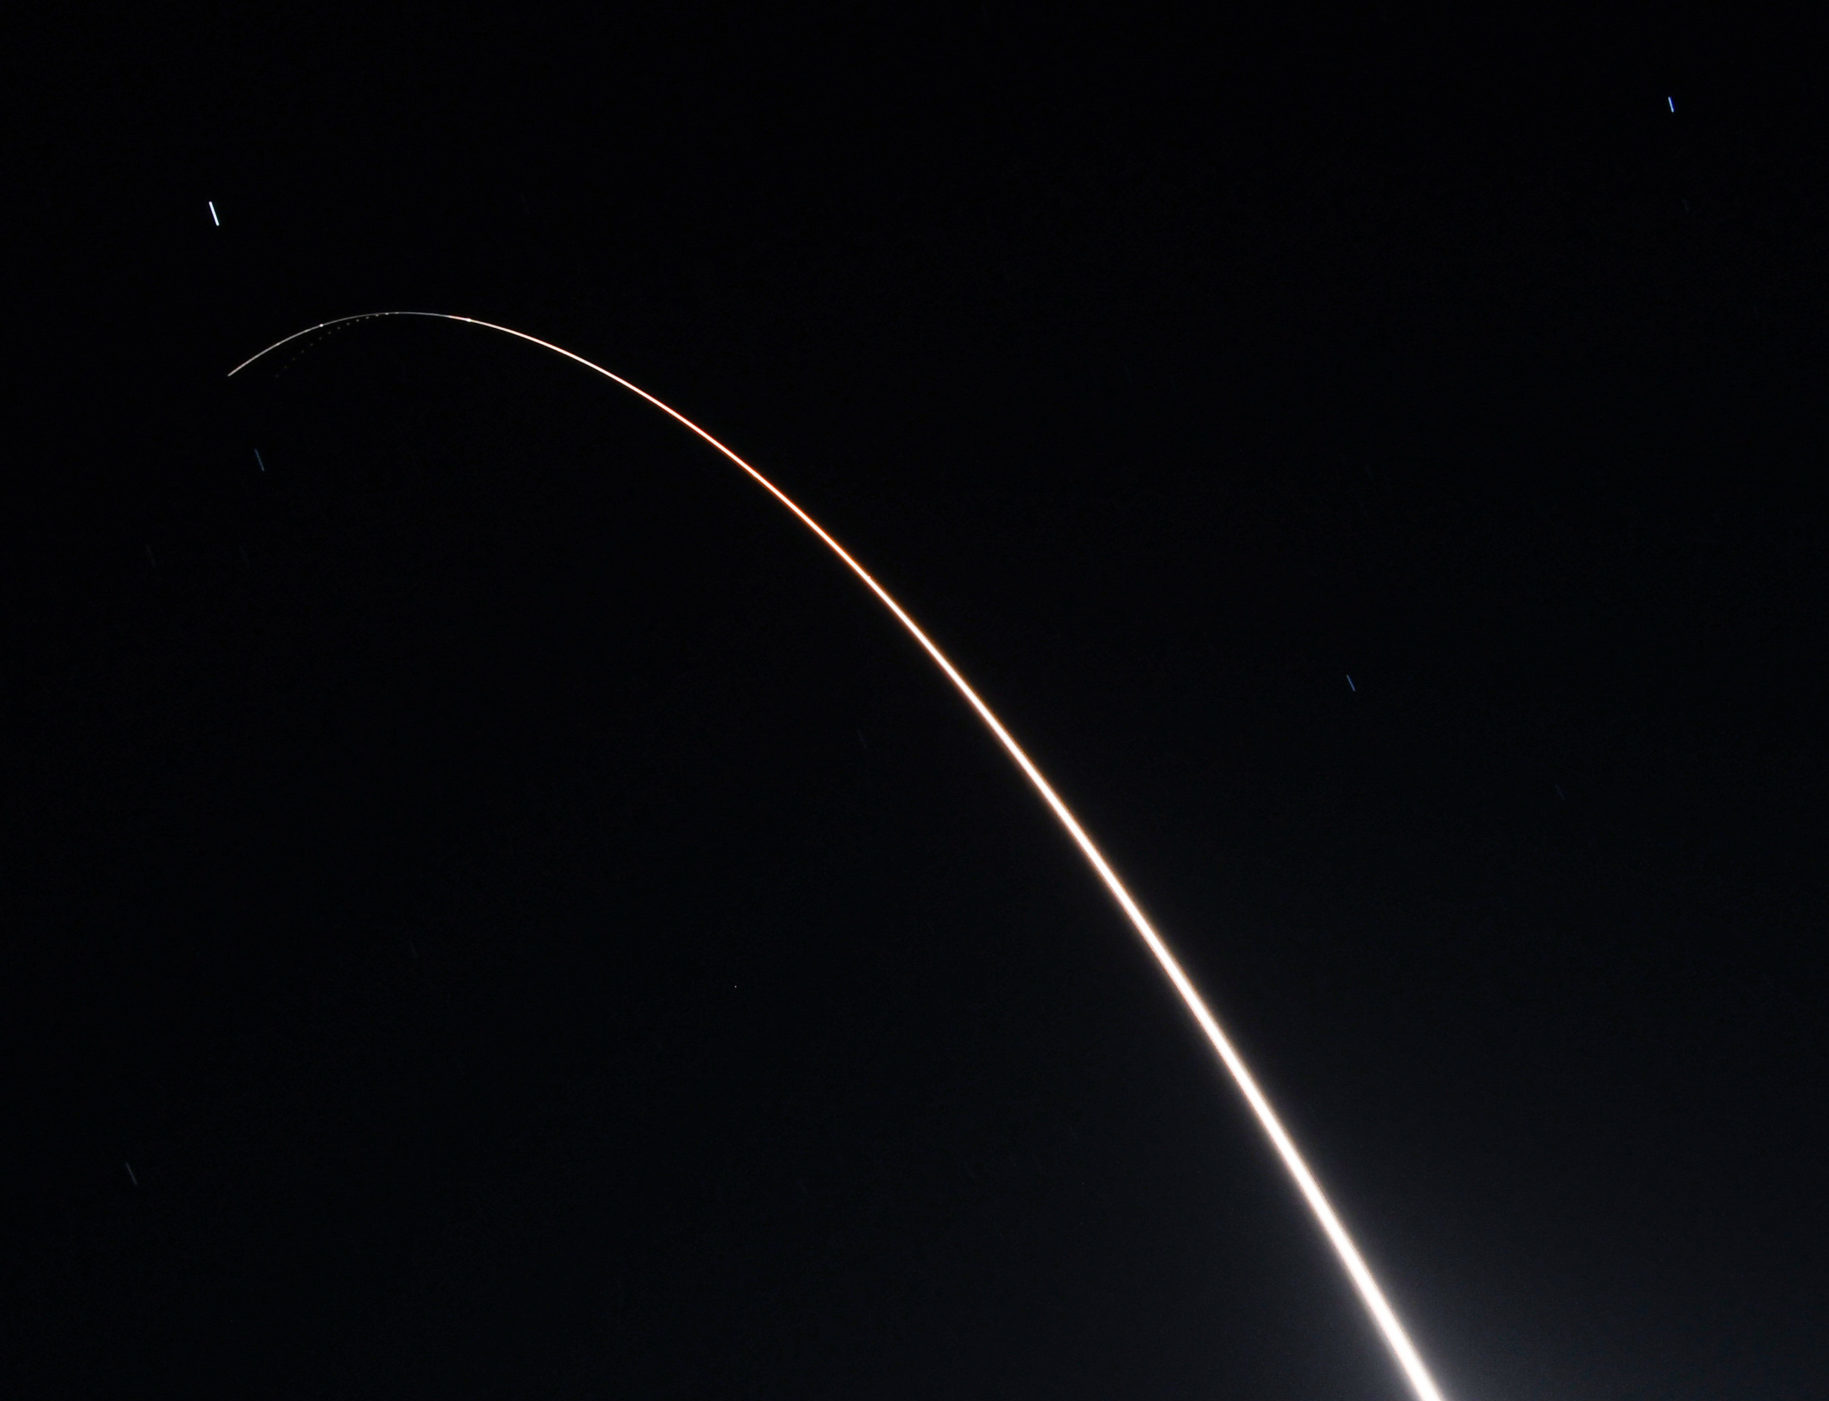 ВВС запускают первое испытание межконтинентальной баллистической ракеты после того, как Россия «приостановила» новый СНВ